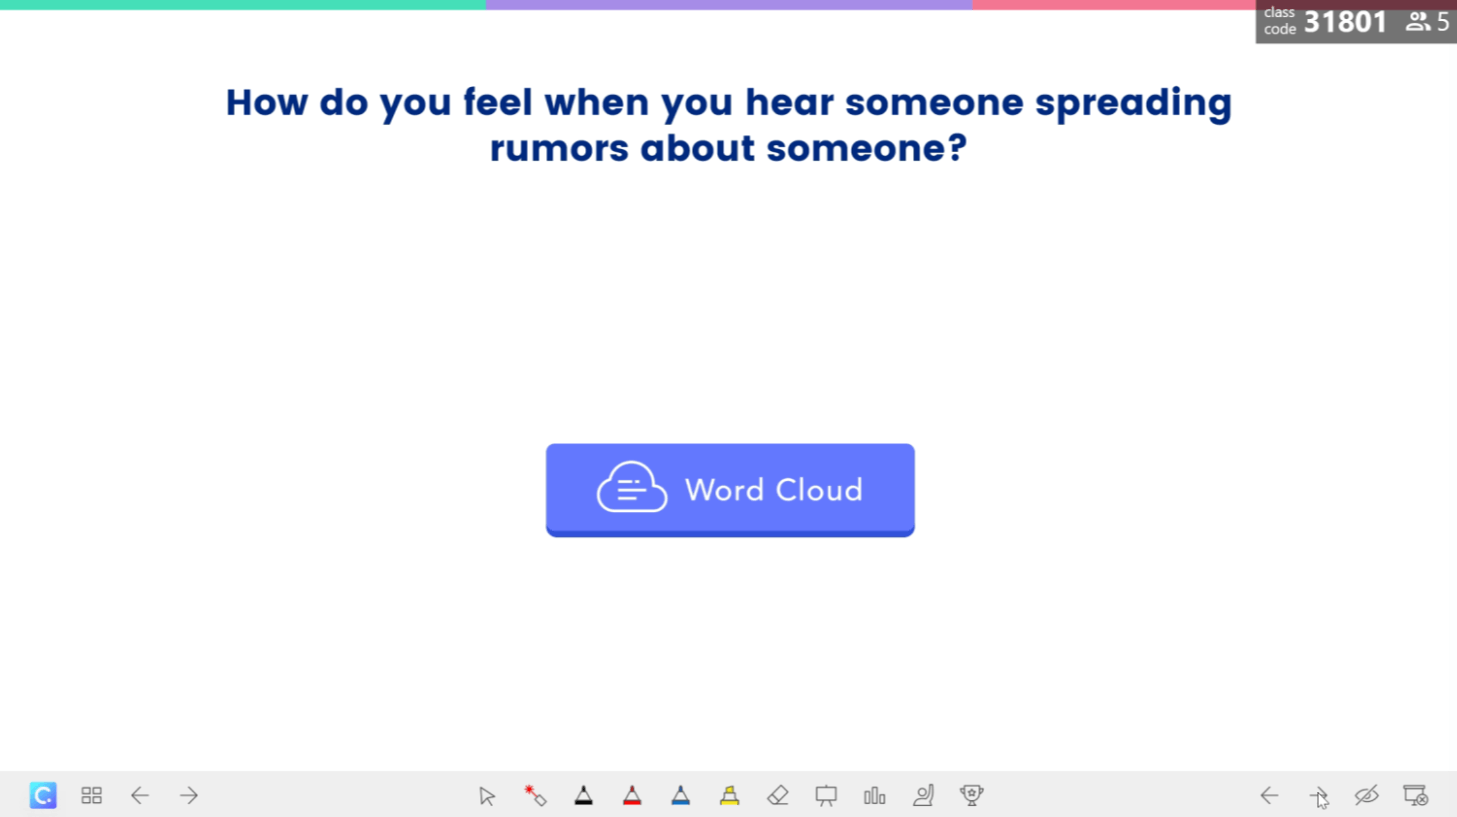 กิจกรรม Word Cloud: คุณรู้สึกอย่างไรเมื่อมีคนแพร่ข่าวลือ?